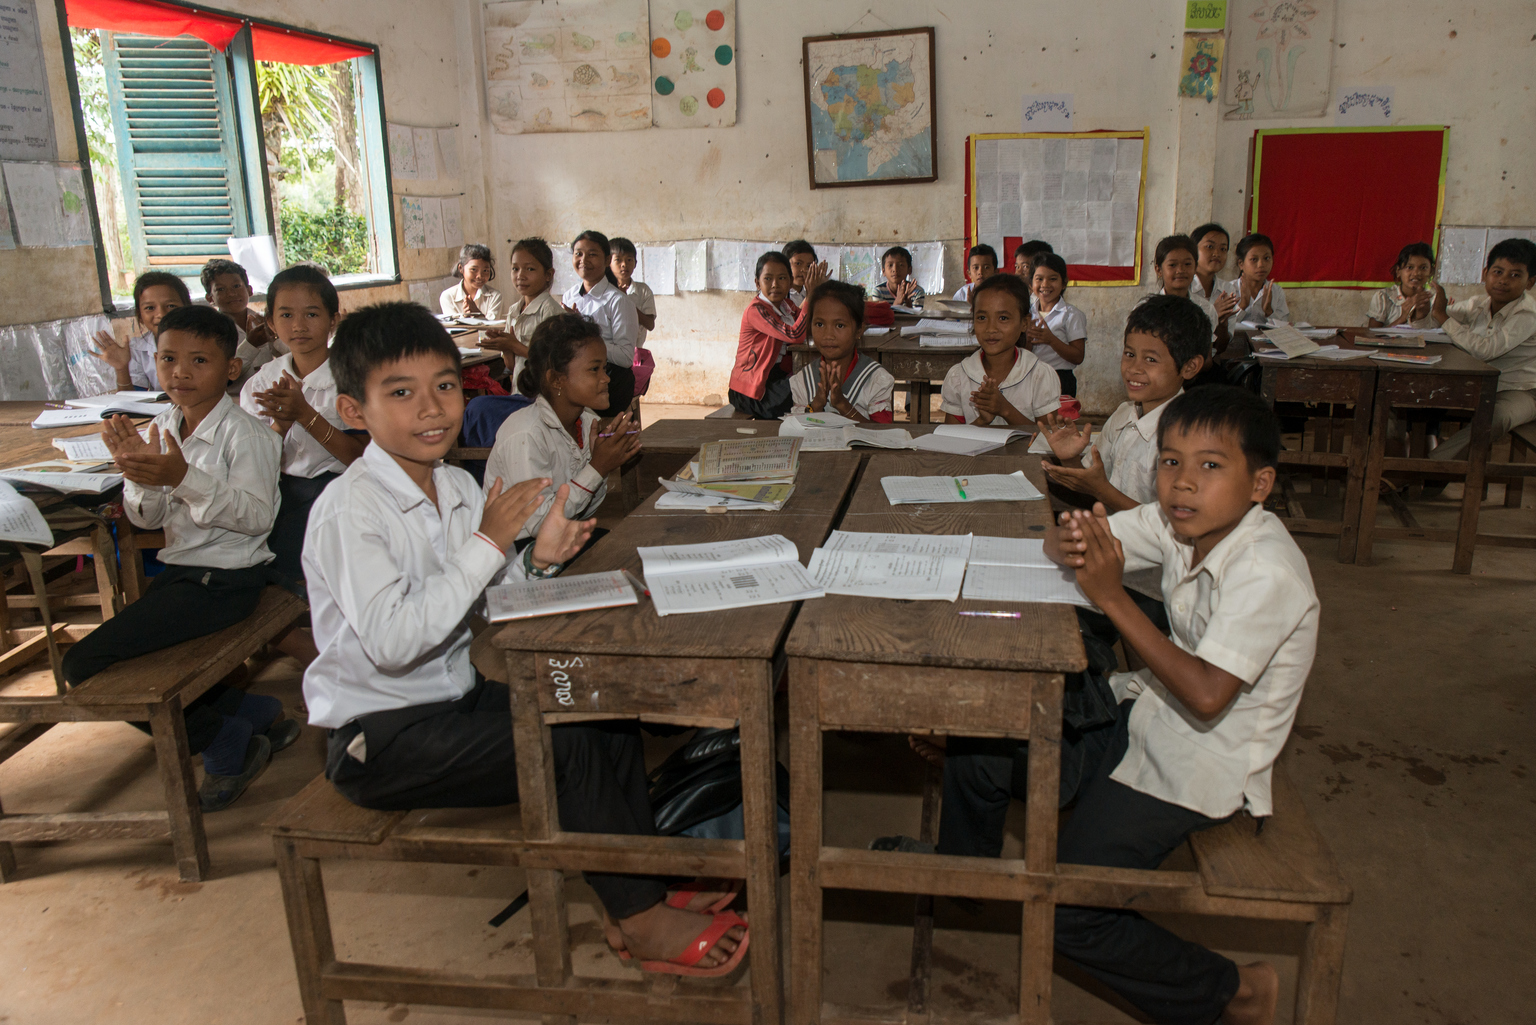 Die Kinder in der Por Preuk Schule applaudieren, als einer ihrer Kollegen eine Aufgabe löst.